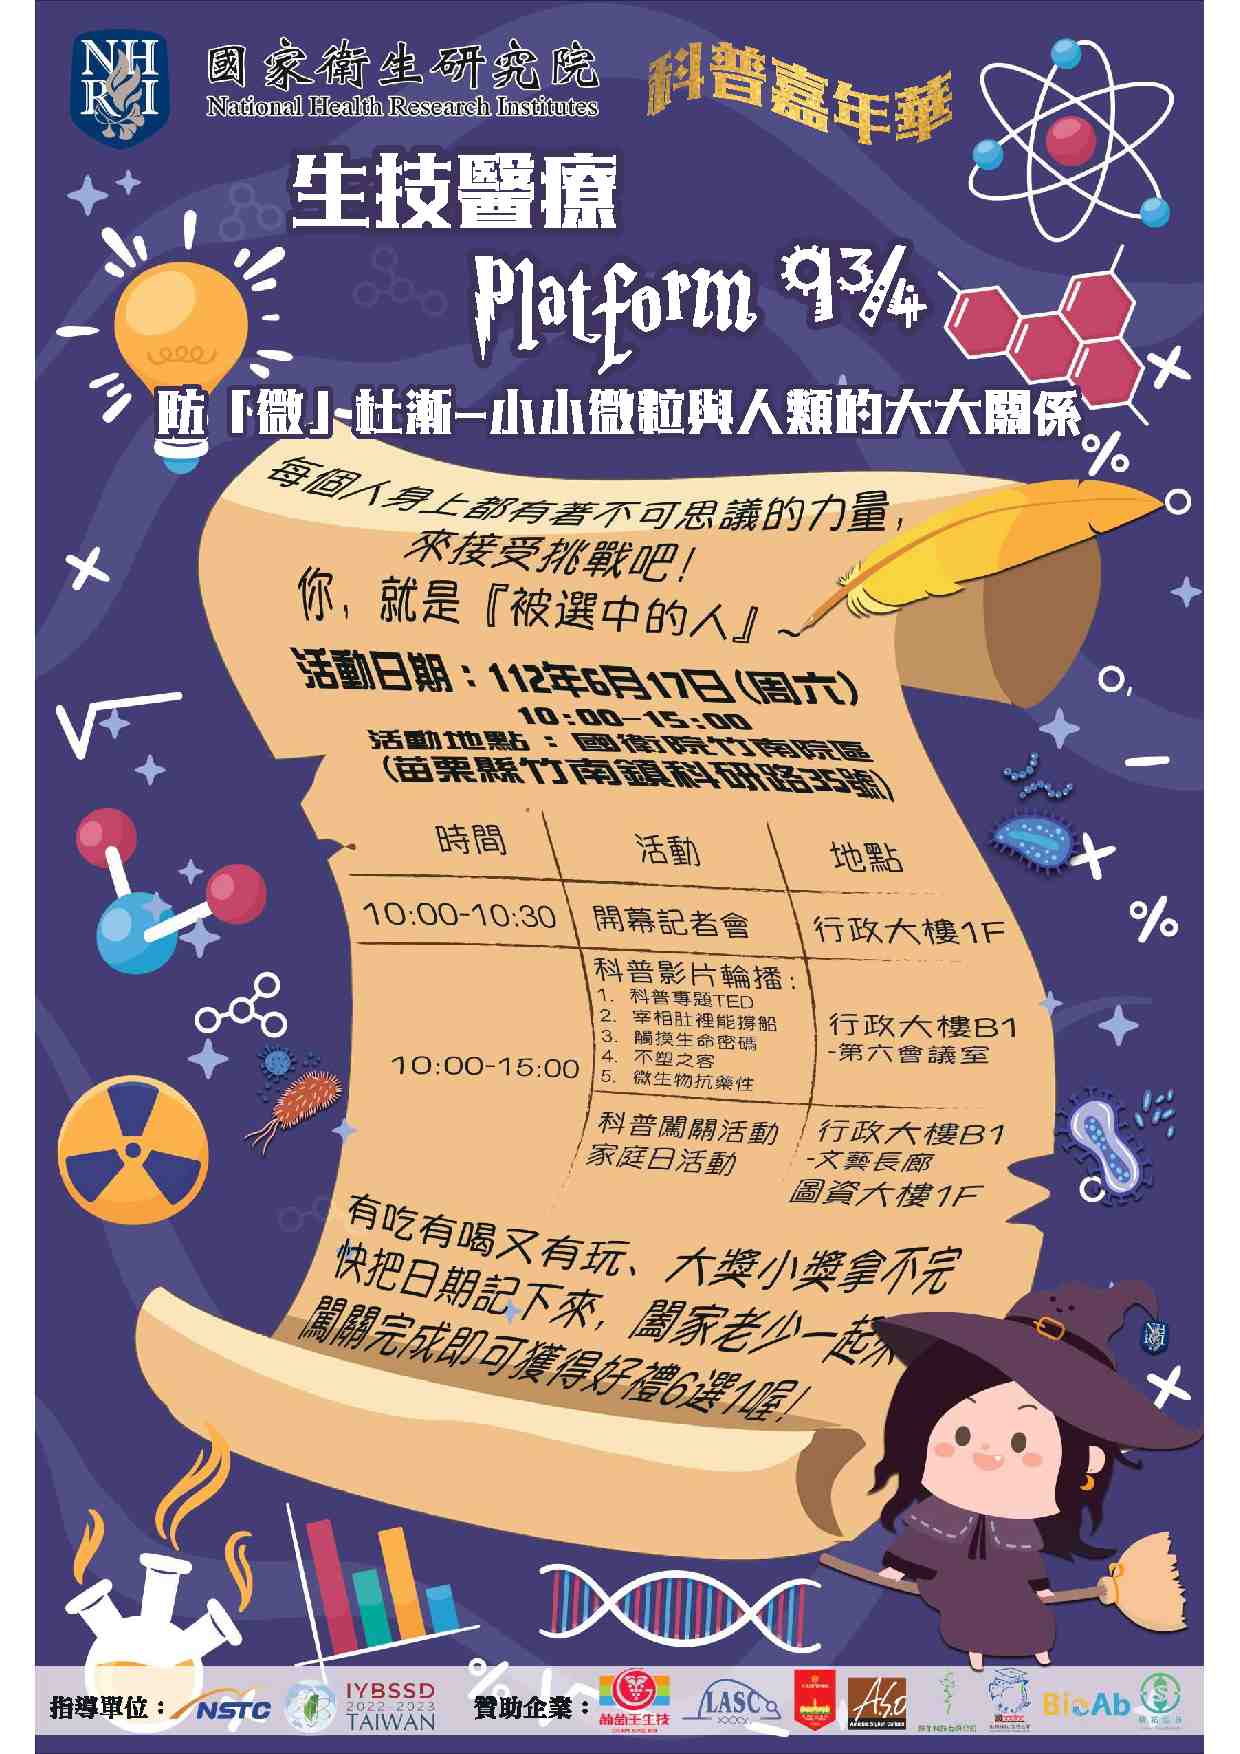 「生技醫療Platform 9¾」科普活動宣傳用圖片/海報